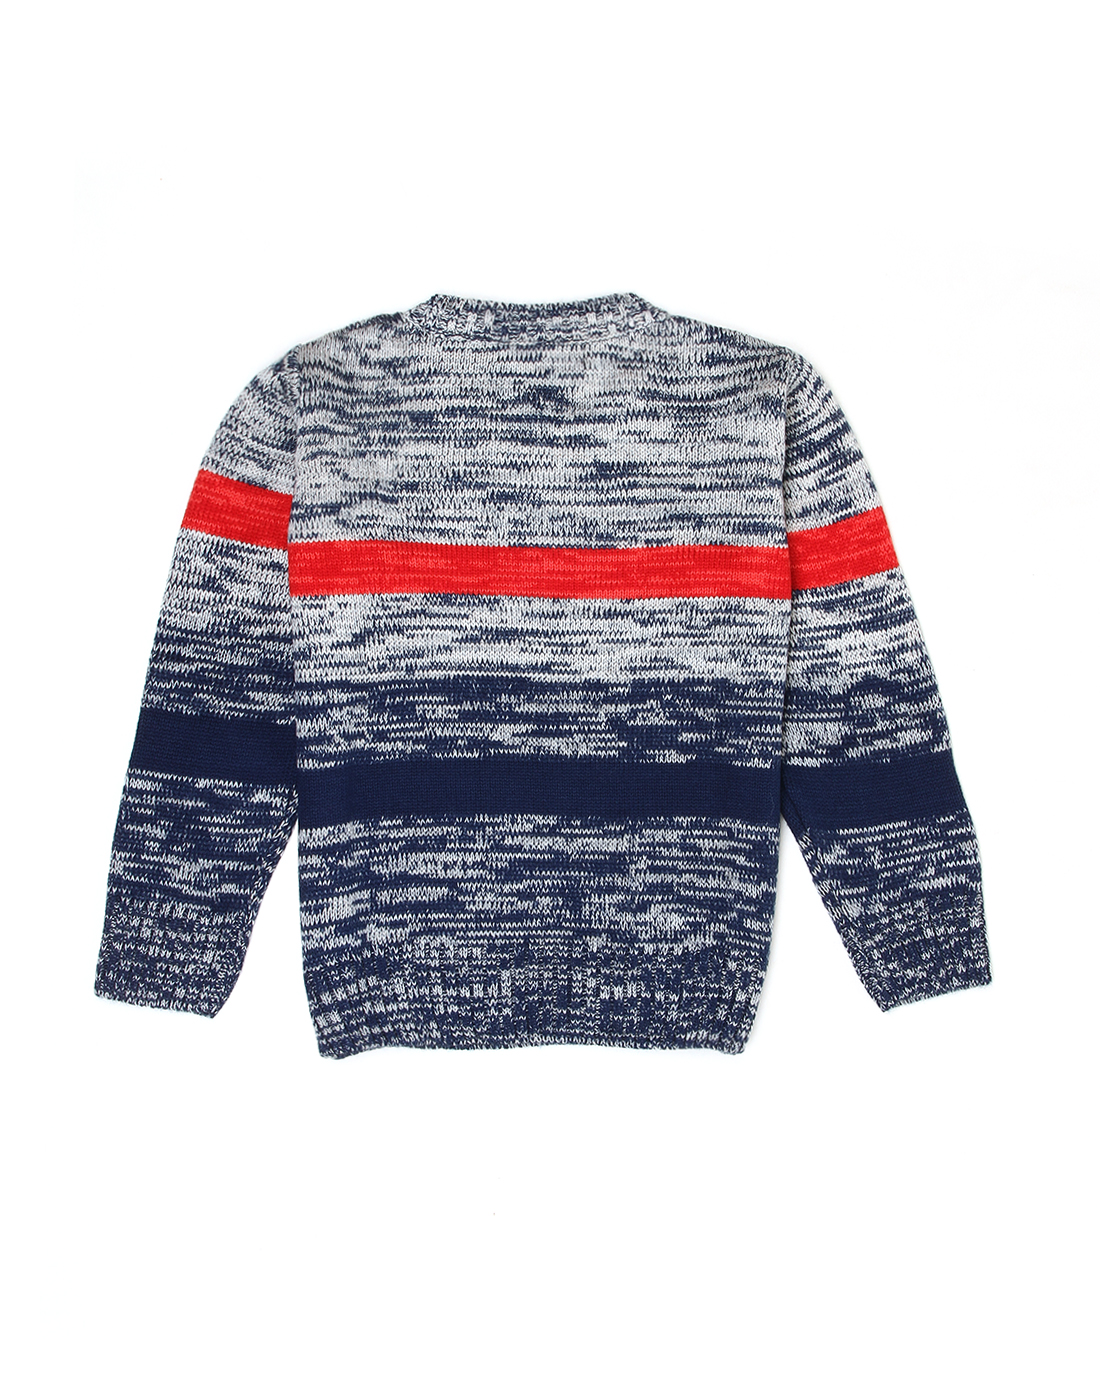 Wingsfield Boys Striped Blue Sweater